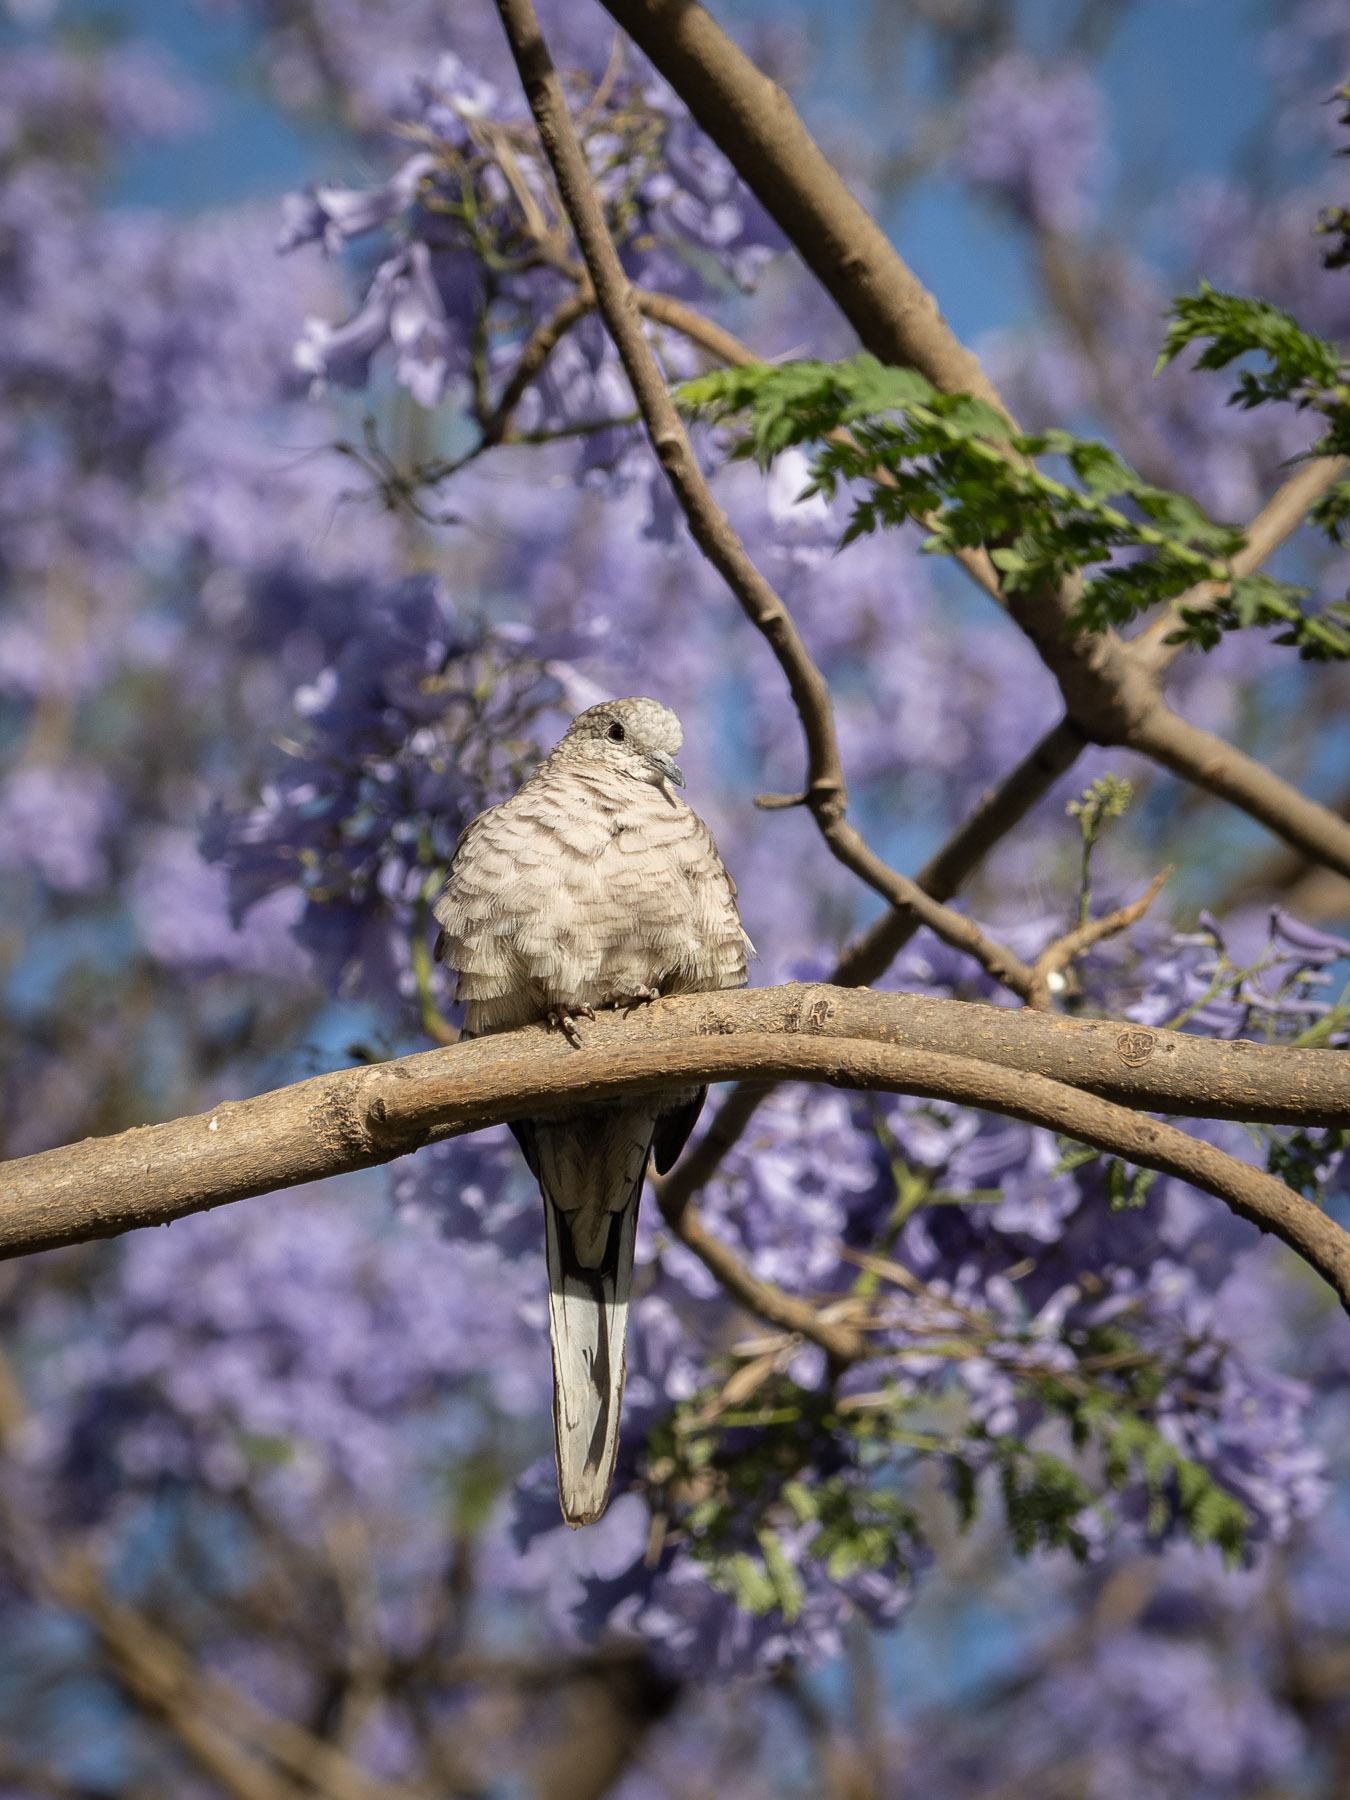 Очень маленькие голуби, размером чуть крупнее воробья. Встречаются как в черте города, так и за его пределами.
Мехико, март 2021. Автор фото: Сутормина Марина